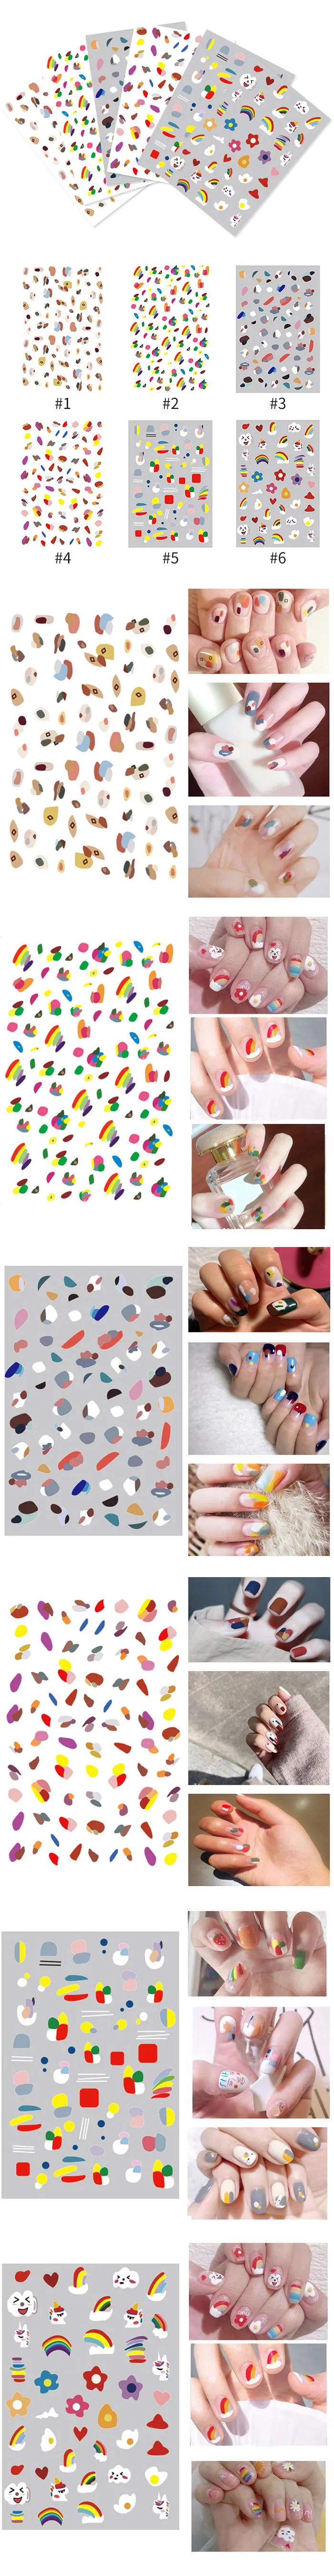 1 лист ногтей Стикеры комбинированным узором милые девчачьи цветы 3D передачи Стикеры s Self-клейкие переводные наклейки для ногтей искусство украшения